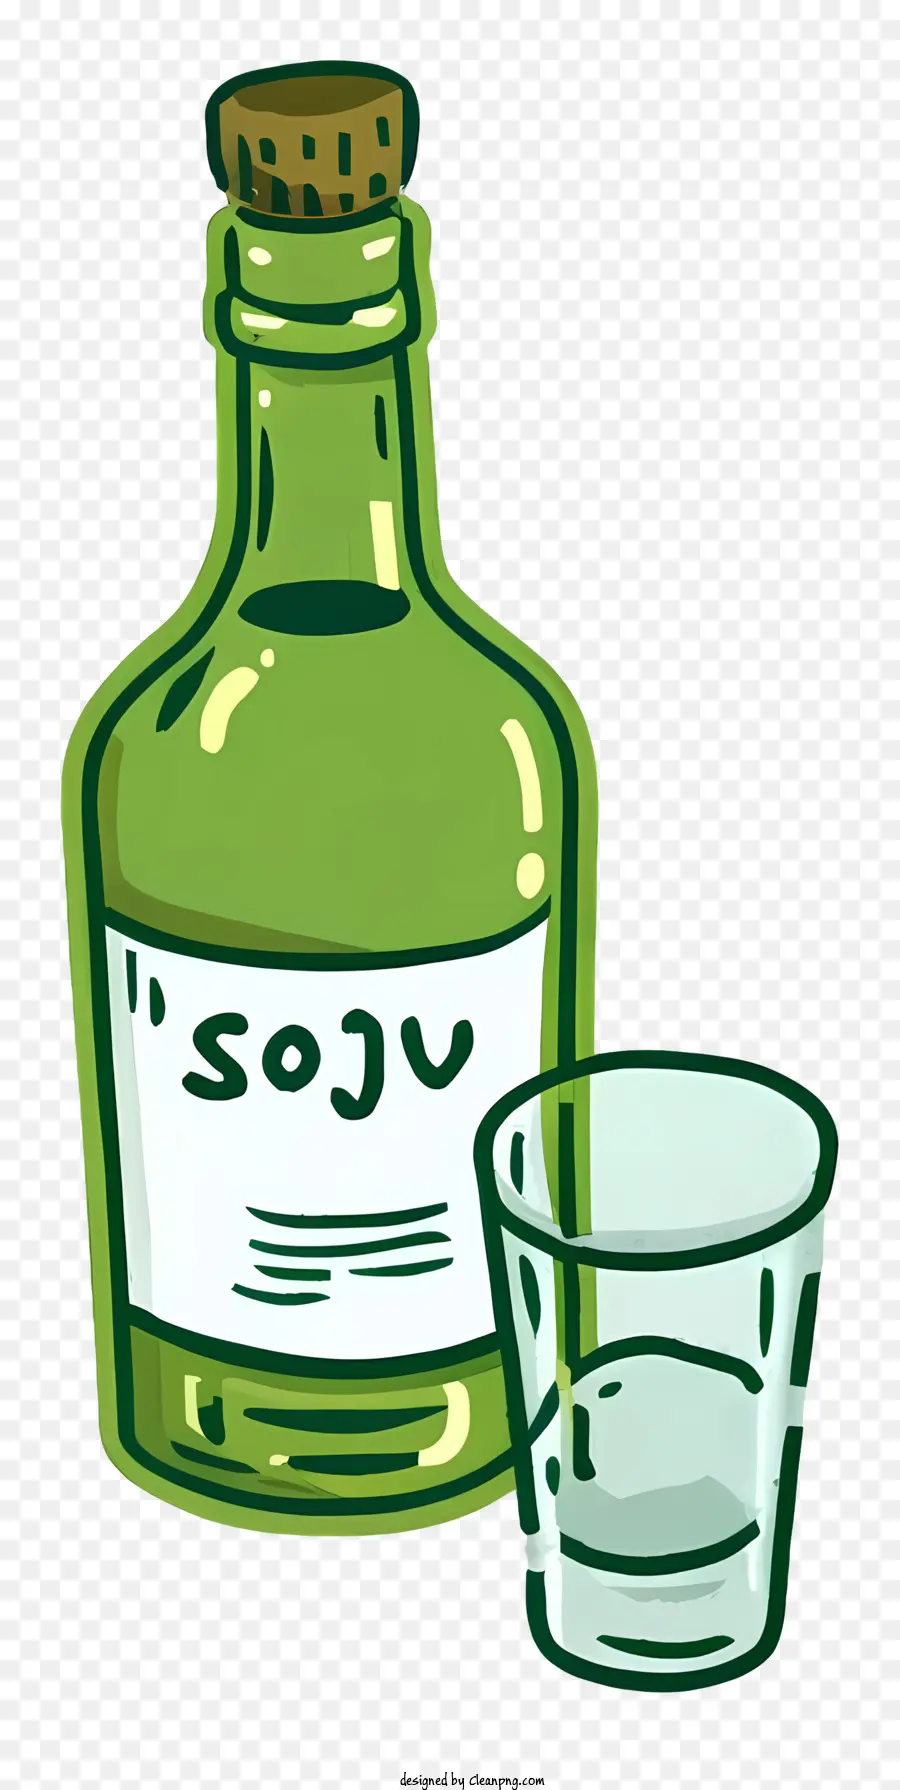 chai rượu sake soju thủy tinh màu xanh lá cây - Chai Soju màu xanh lá cây, ly với rượu sake, nền đen